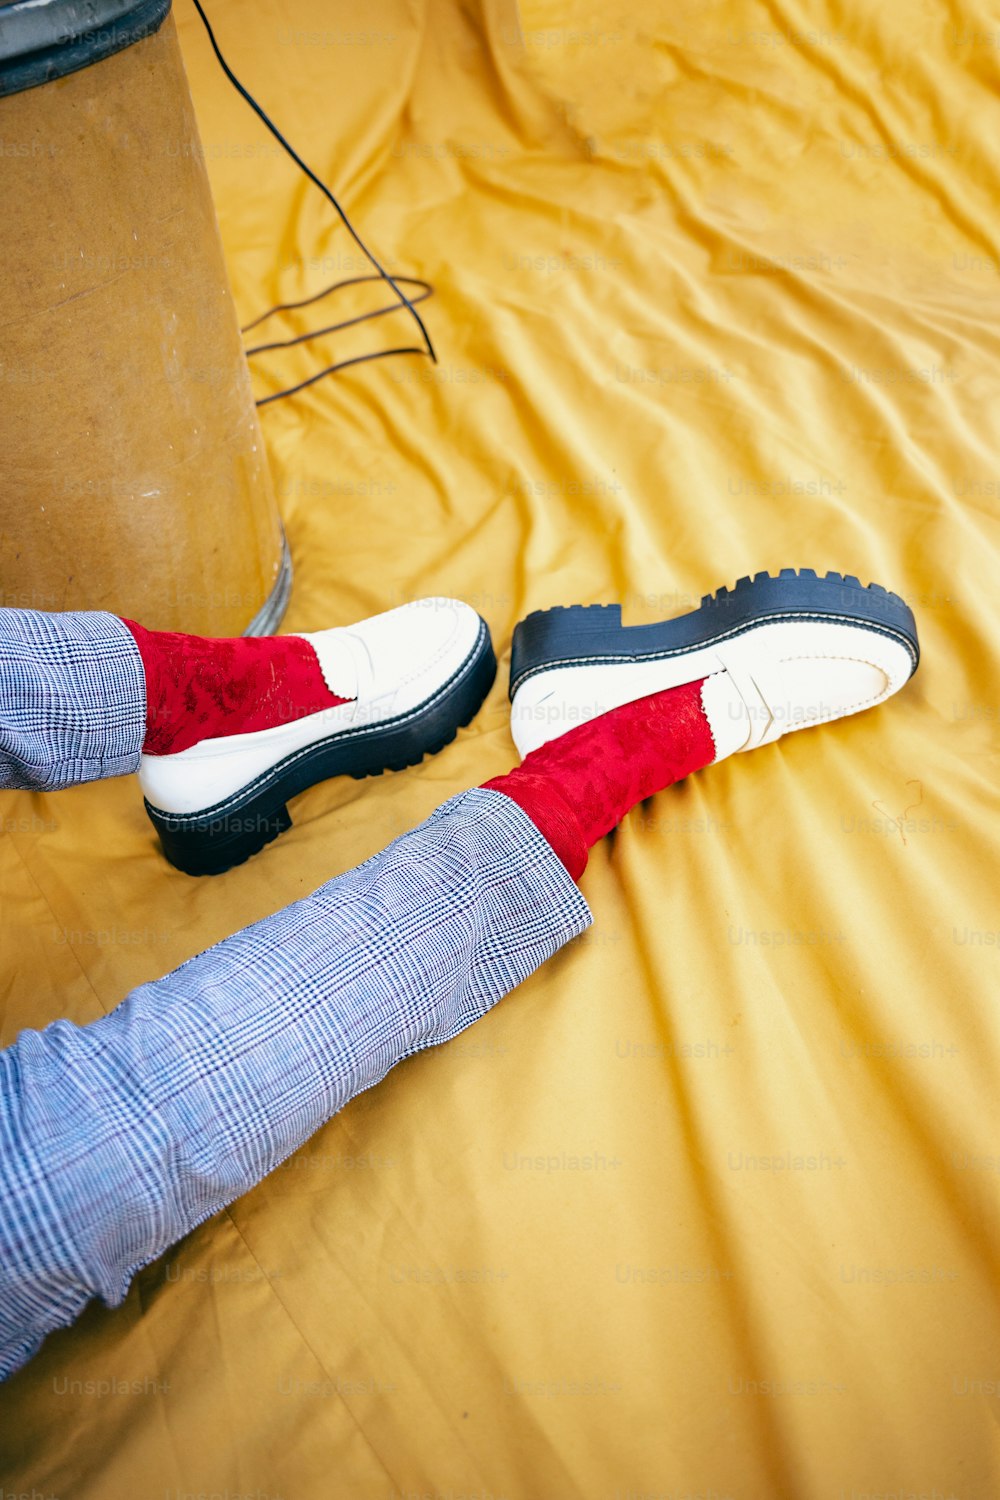 una persona acostada en una cama con zapatos rojos y blancos